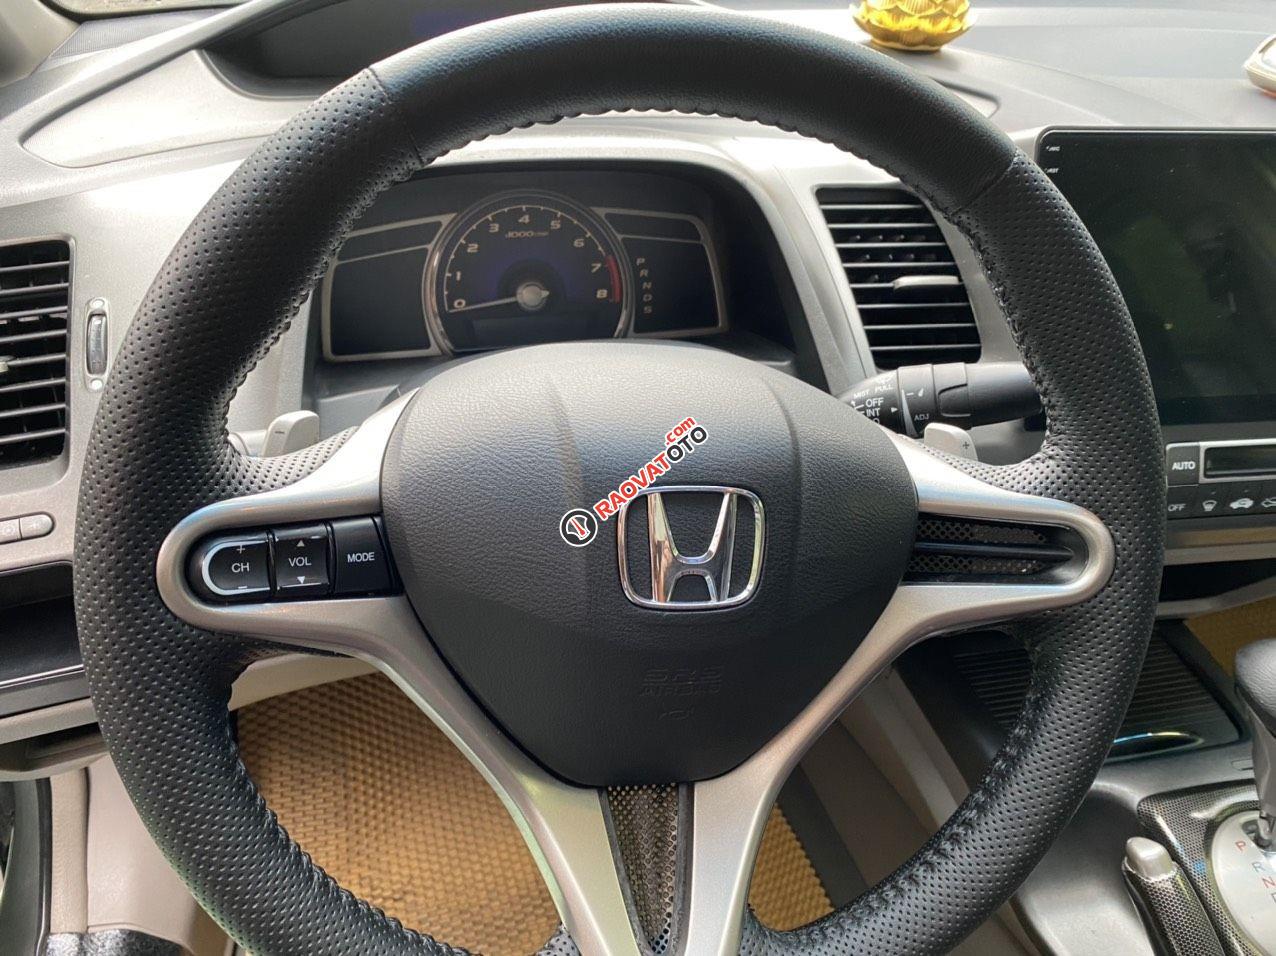 Cần bán gấp Honda Civic 2.0 năm sản xuất 2009, bản đủ, xe đẹp không lỗi nhỏ, bao check tets hãng toàn quốc-8